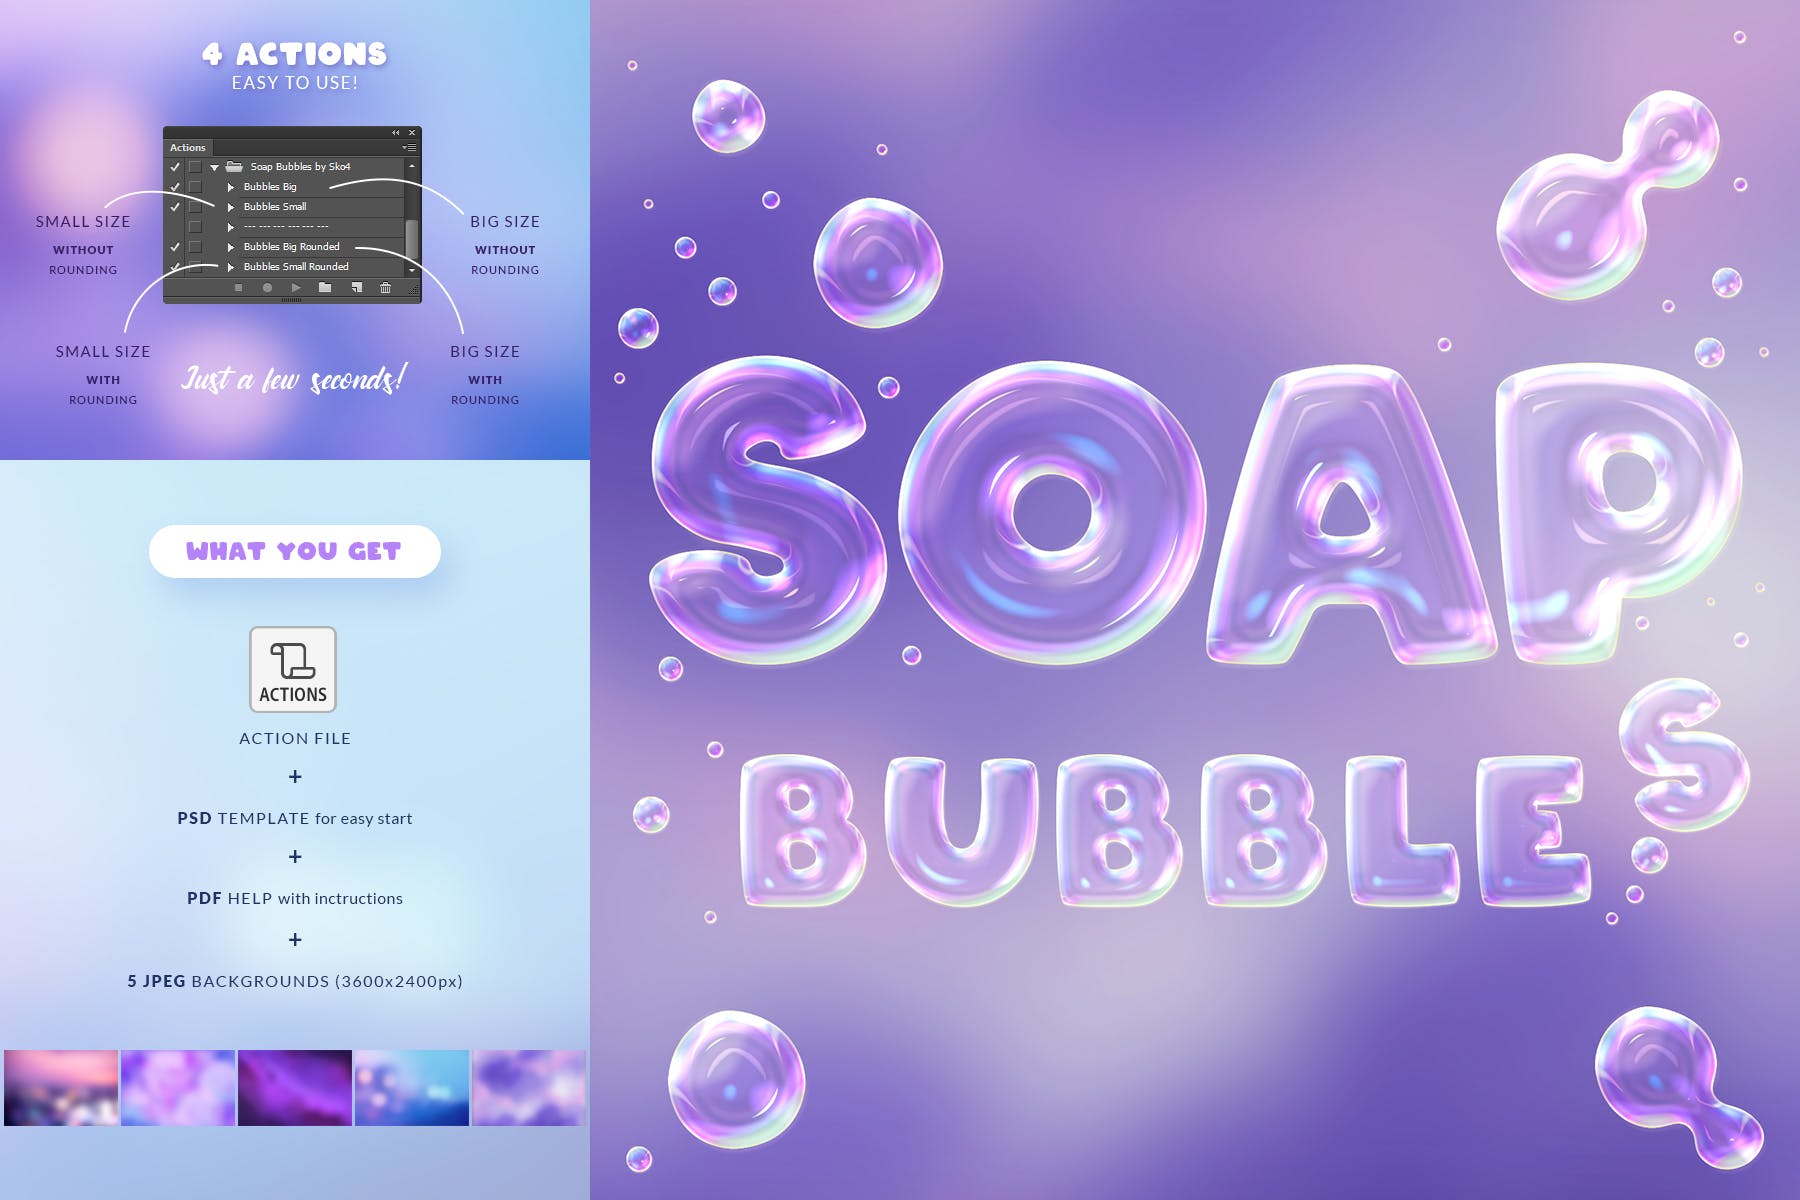 肥皂泡文字特效大洋岛精选PS动作 Soap Bubbles Photoshop Action插图2